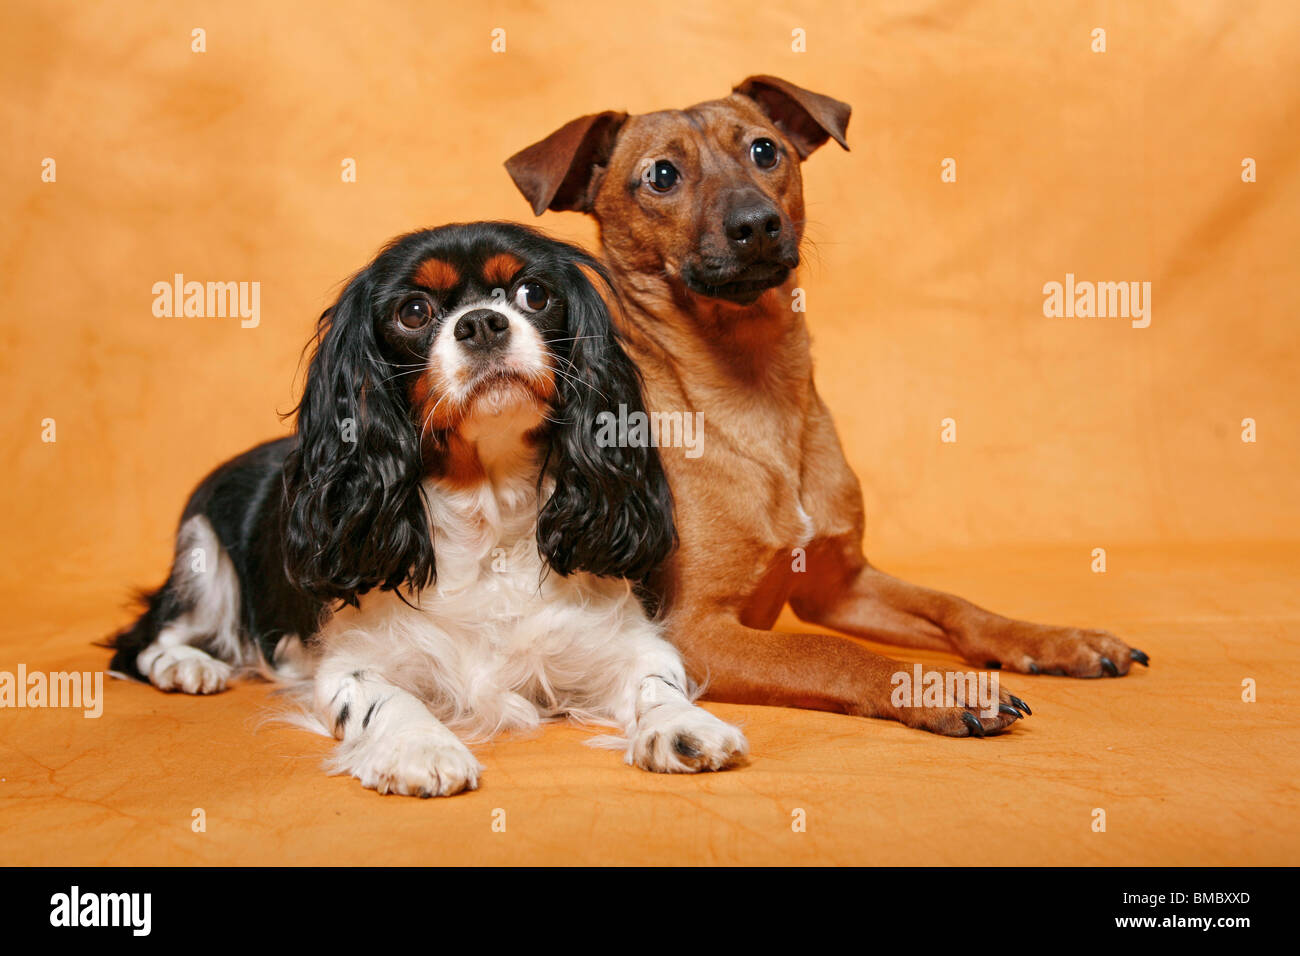 Hunde / dogs Stock Photo